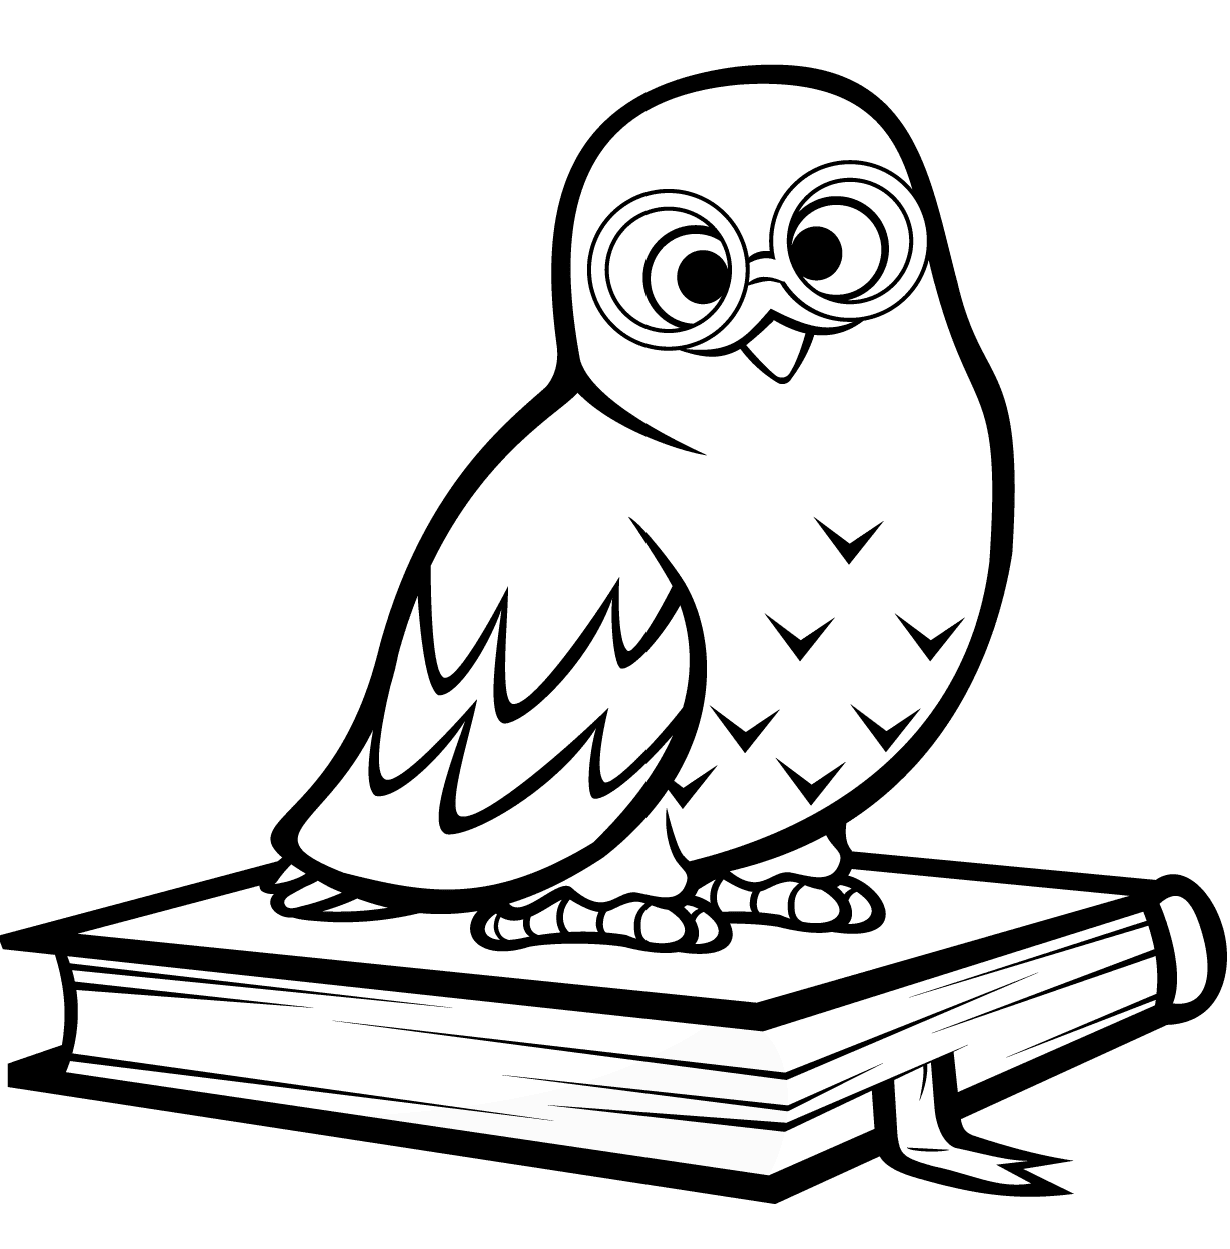 Hibou polaire assis sur un livre de Owl